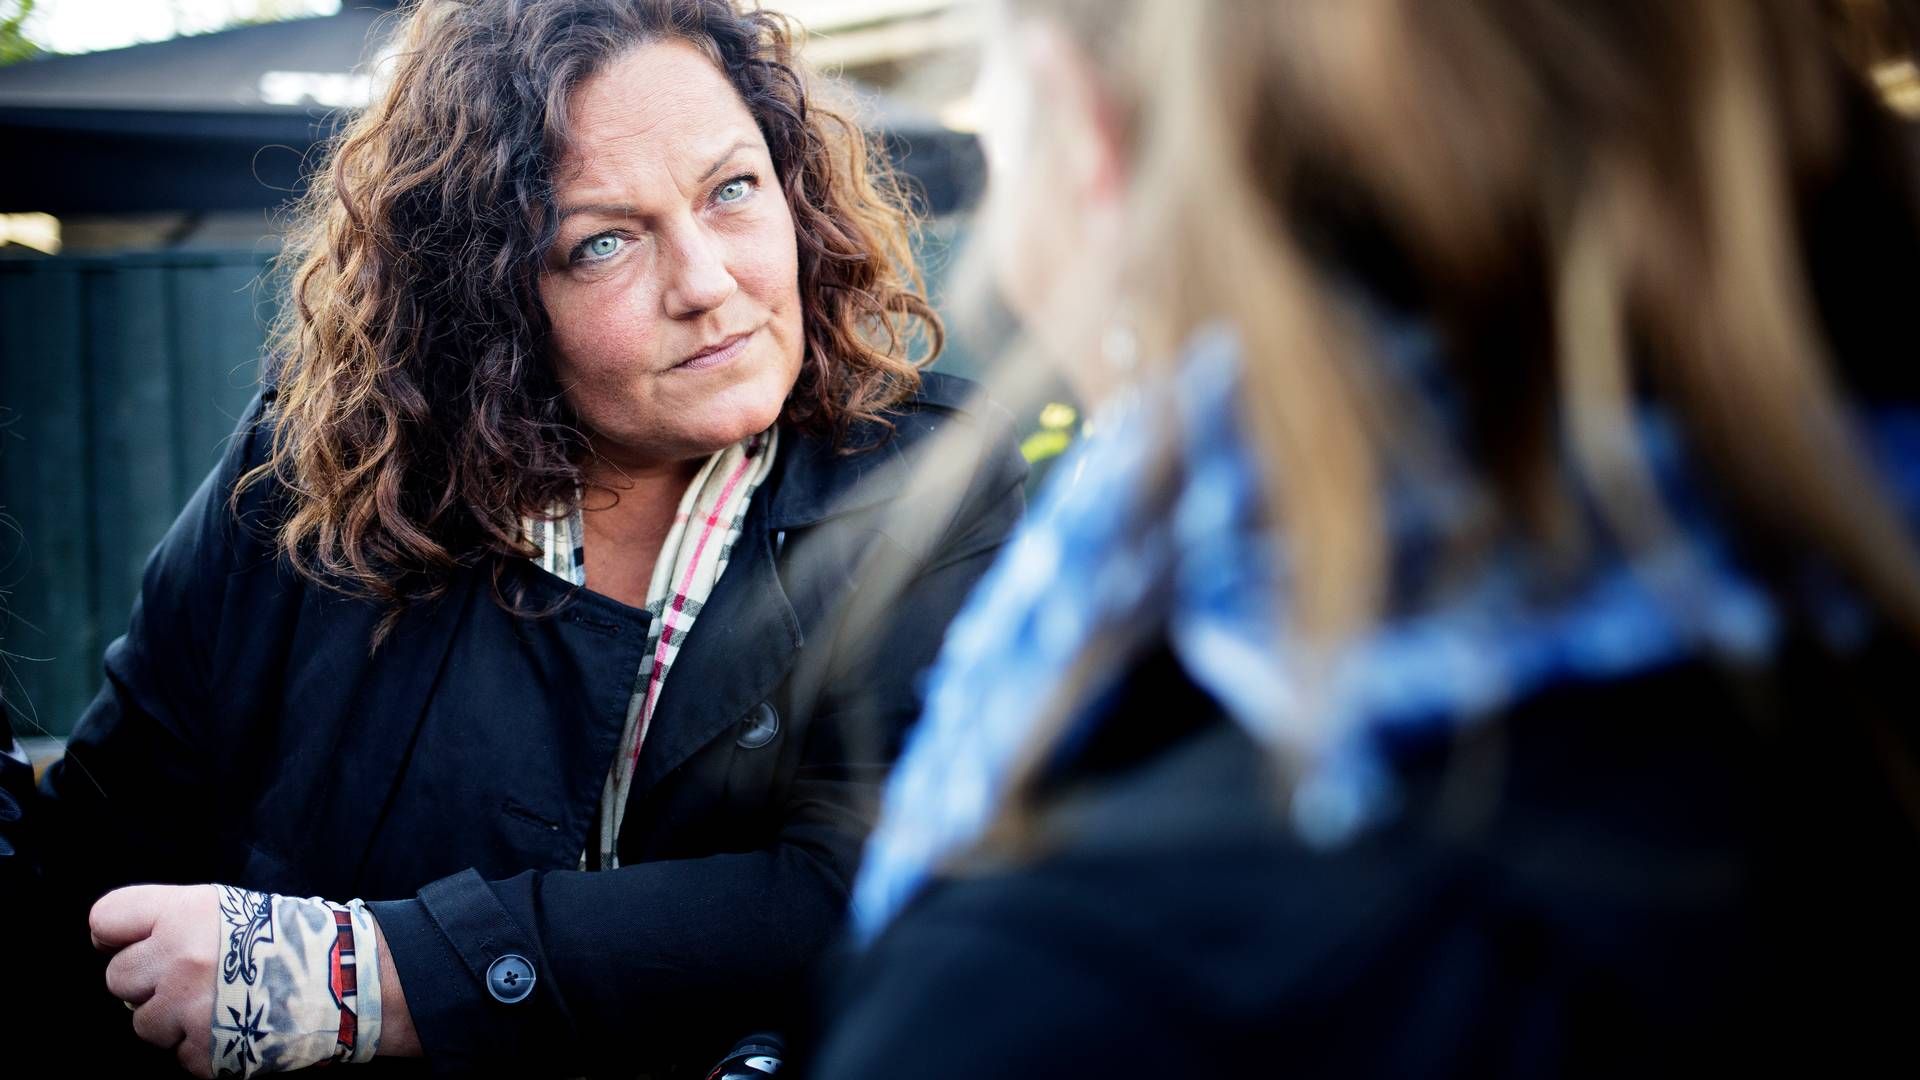 Styrelse har ikke fundet tegn på, at Nanna Gotfredsen har misbrugt offentlige midler. (Arkivfoto). | Foto: Lasse Kofod